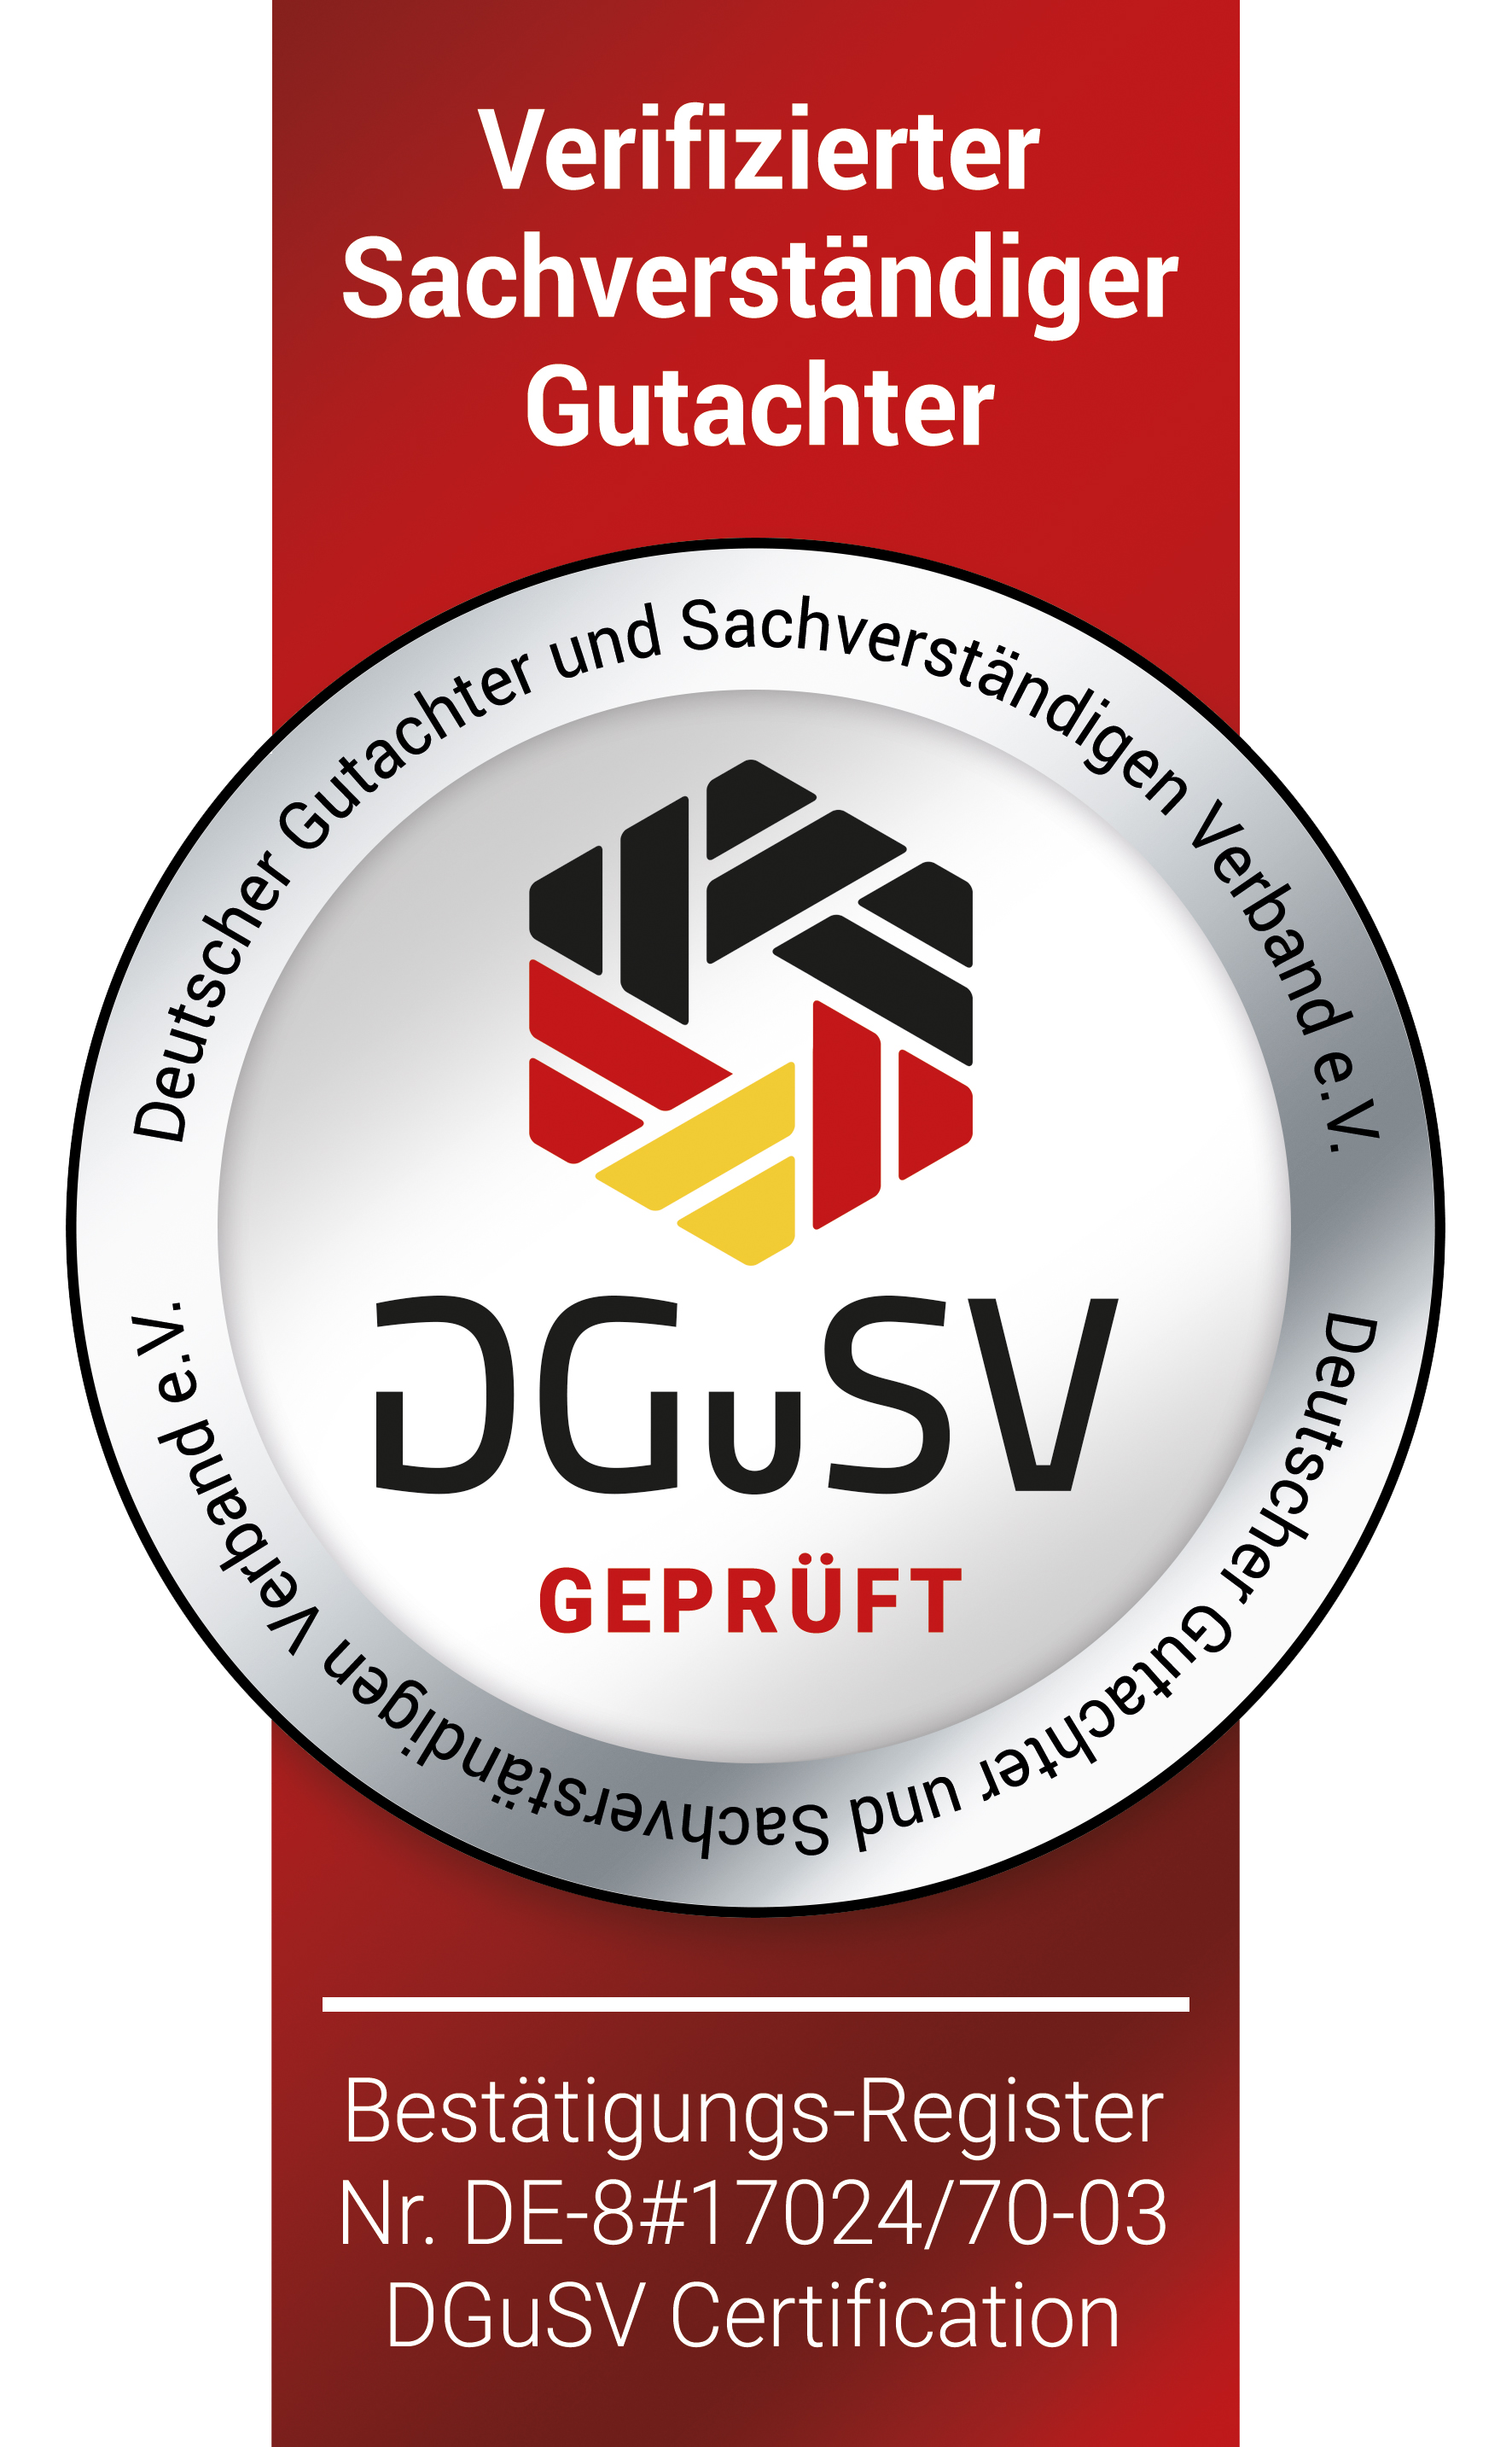 DSuSV-Sigel